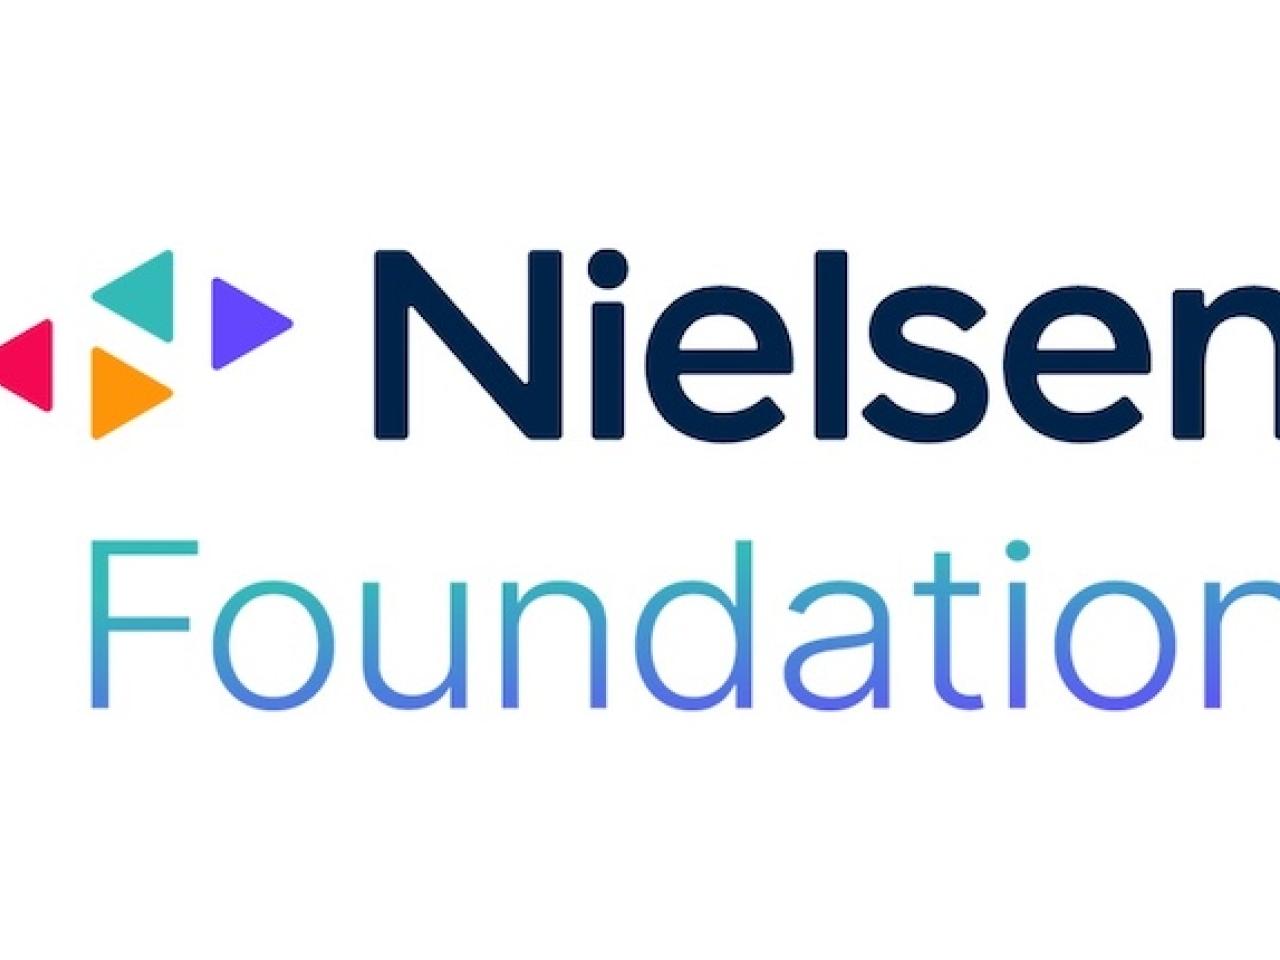 Nielsen Foundation Logo.